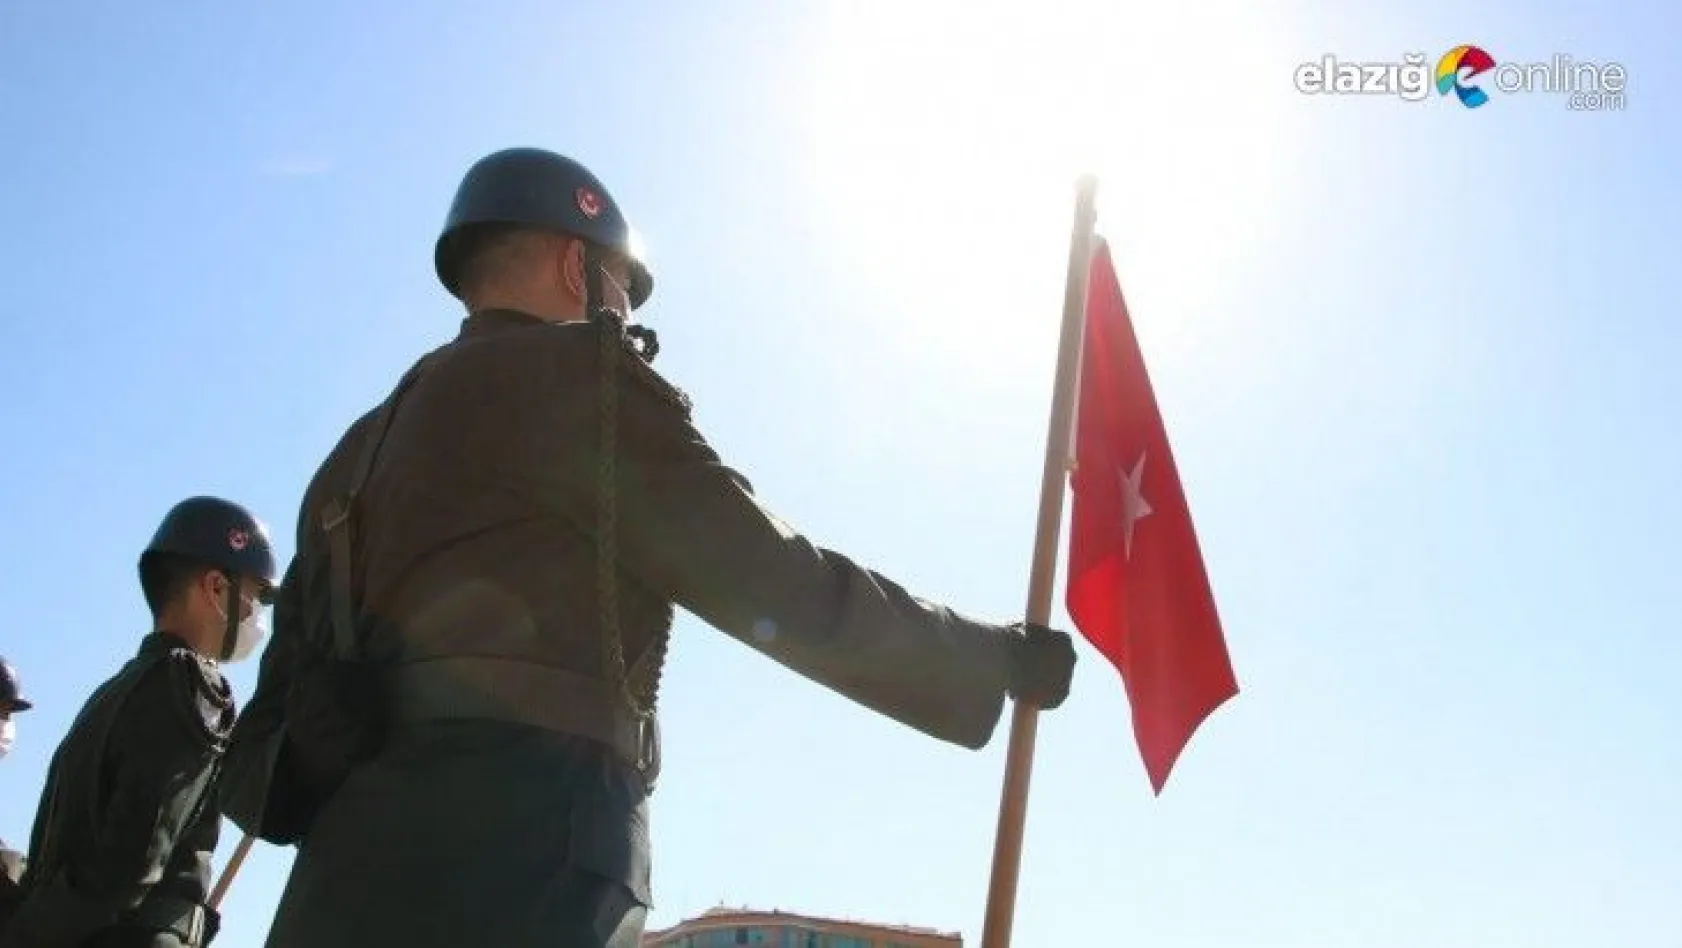 Elazığ'da 19 Eylül Gaziler Günü etkinlikleri düzenlendi